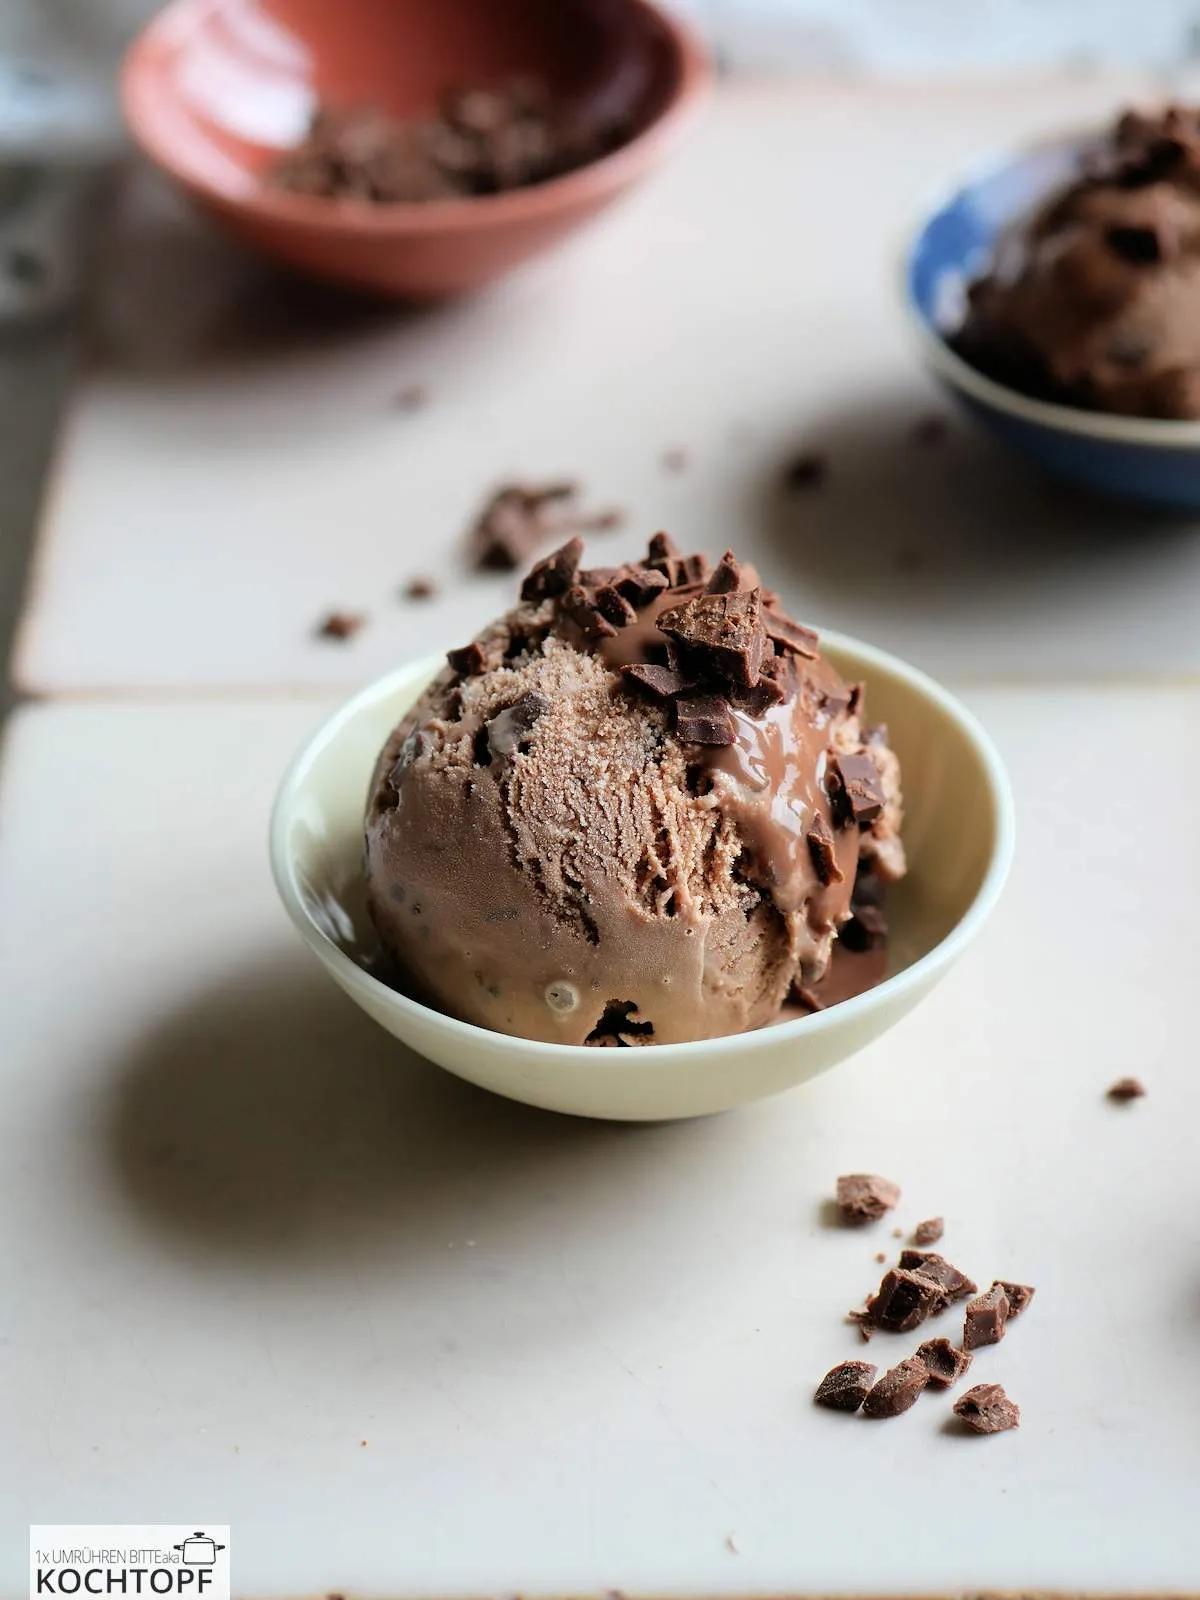 Milchschokoladen-Eis mit knackigen Schoko-Stückchen – 1x umrühren bitte ...